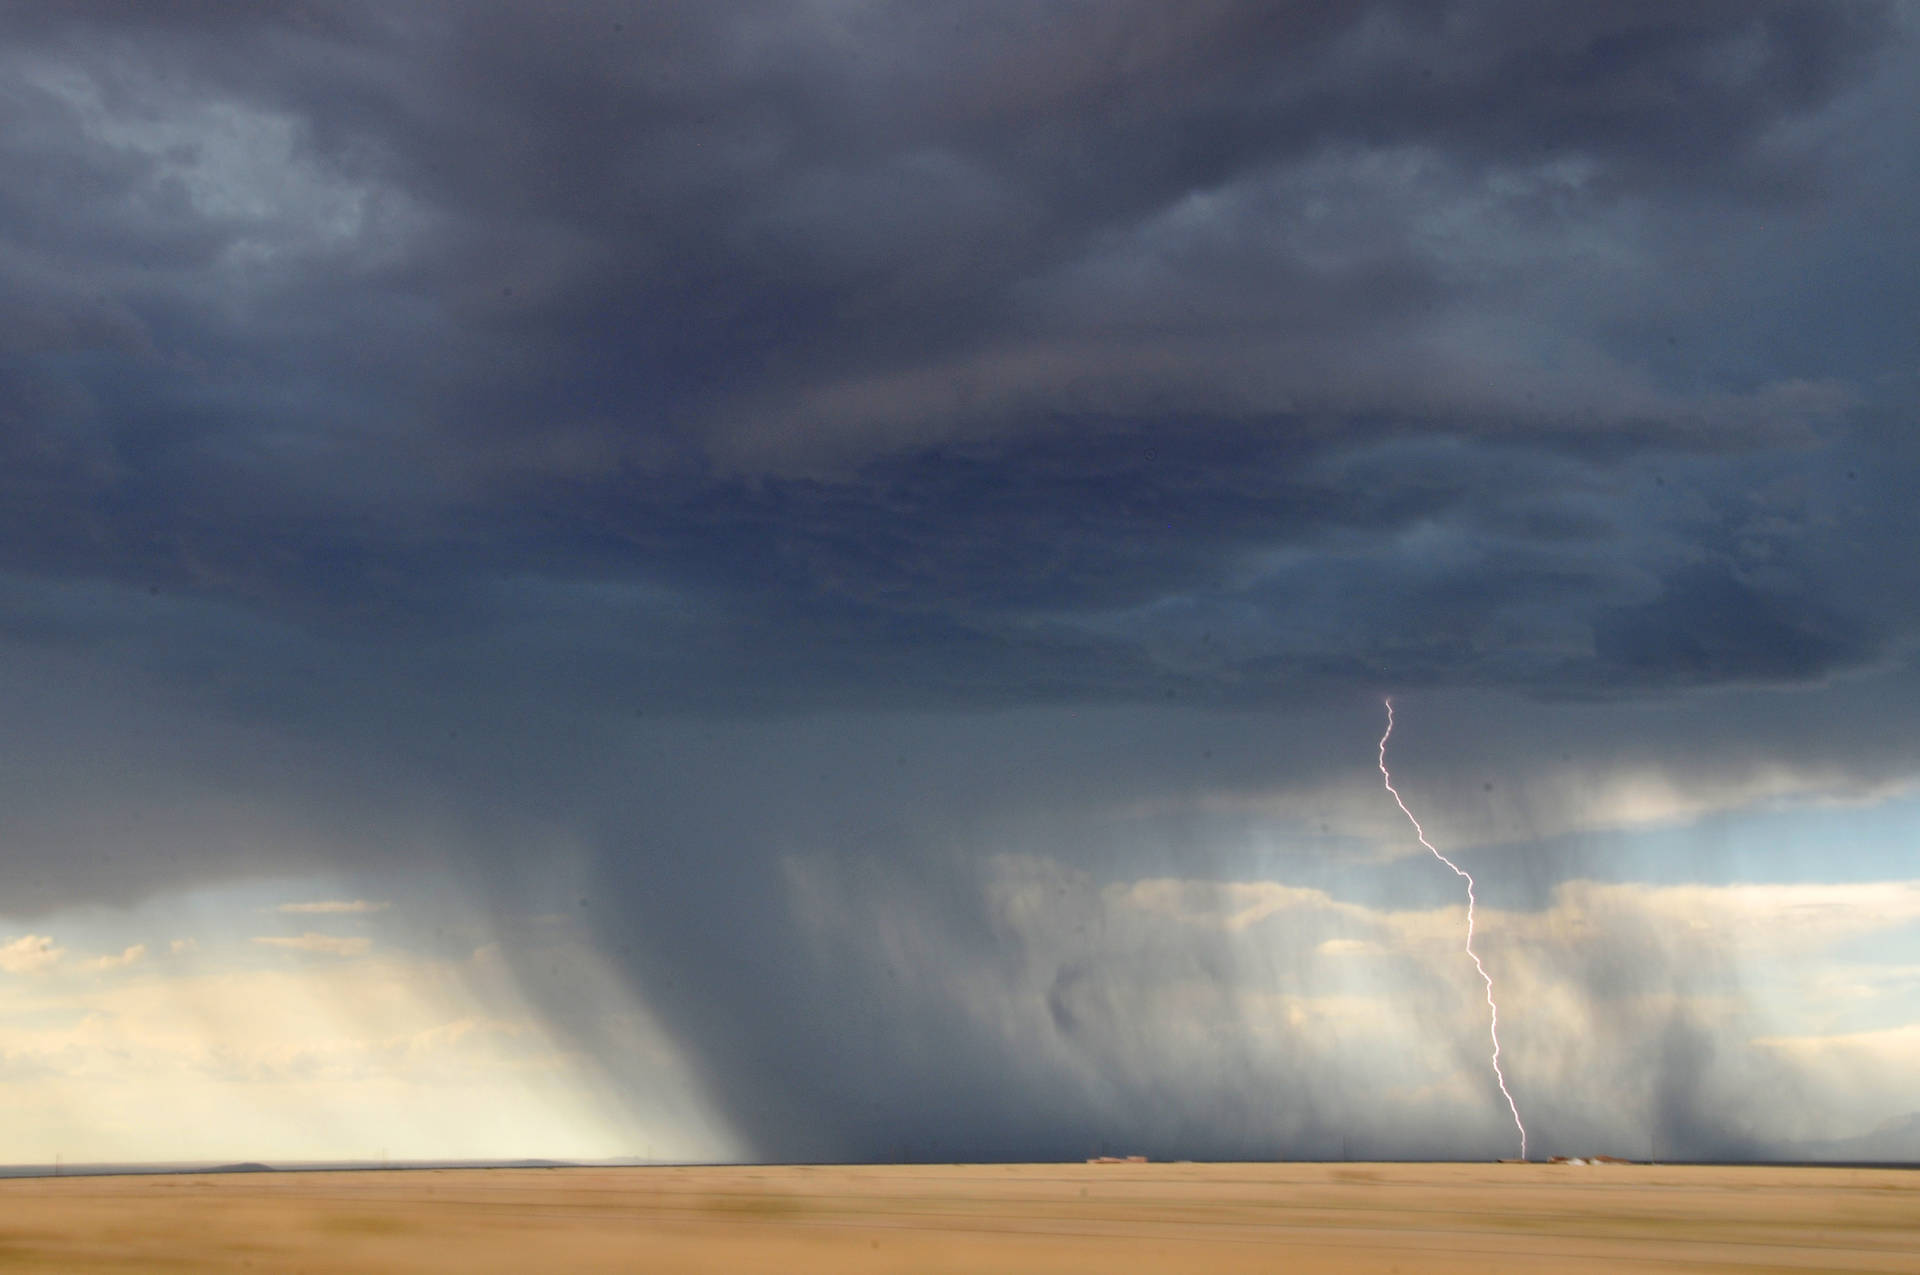 Storm Lightning Strikes At Desert